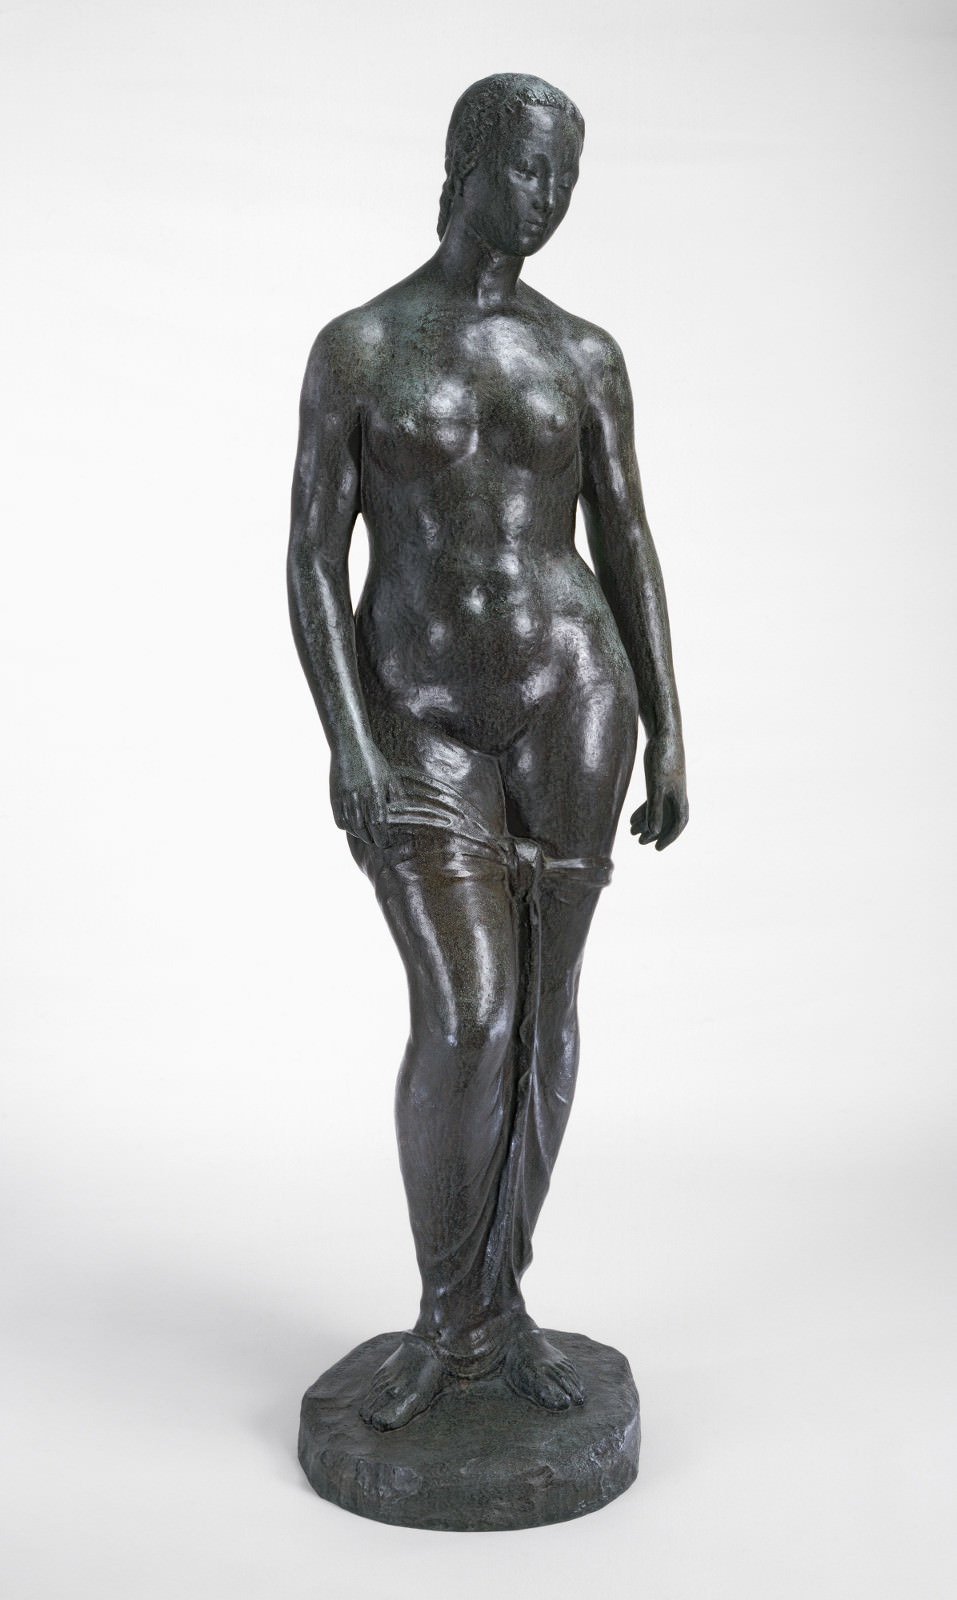 无花果. 3  - 男子站在, 威廉·莱曼布鲁克, 1910, 青铜器, 191.2 x 54 x 39.9 厘米. 国家艺术画廊, 华盛顿. 艾尔萨·梅隆·布鲁斯基金.